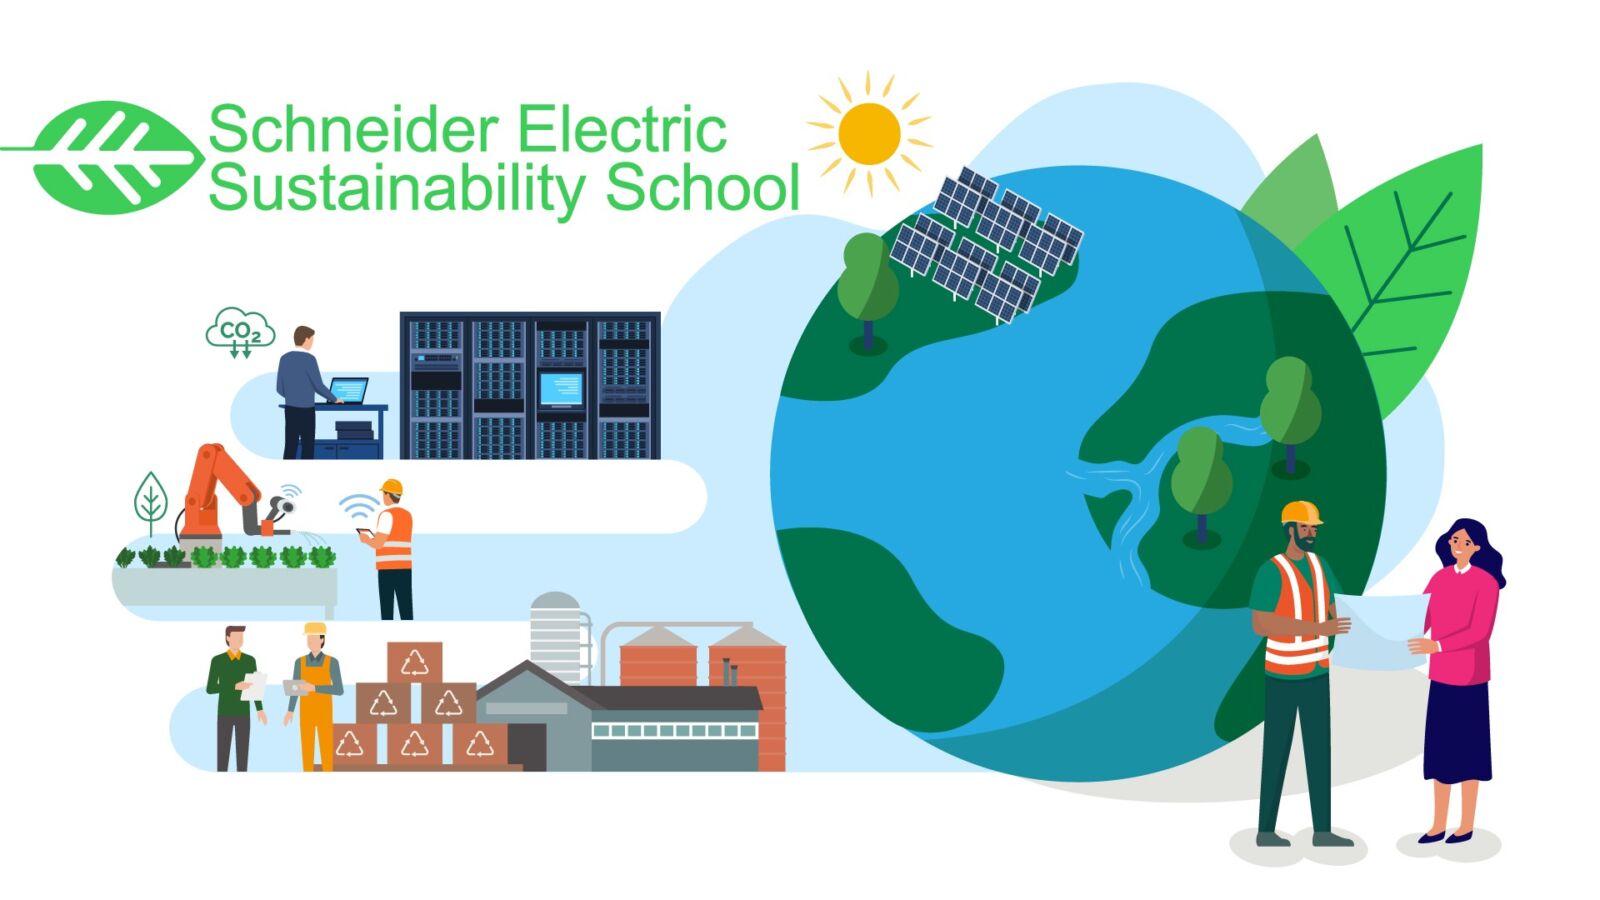 施耐德電機永續學院開放報名 免費課程助力企業邁向淨零排放 5